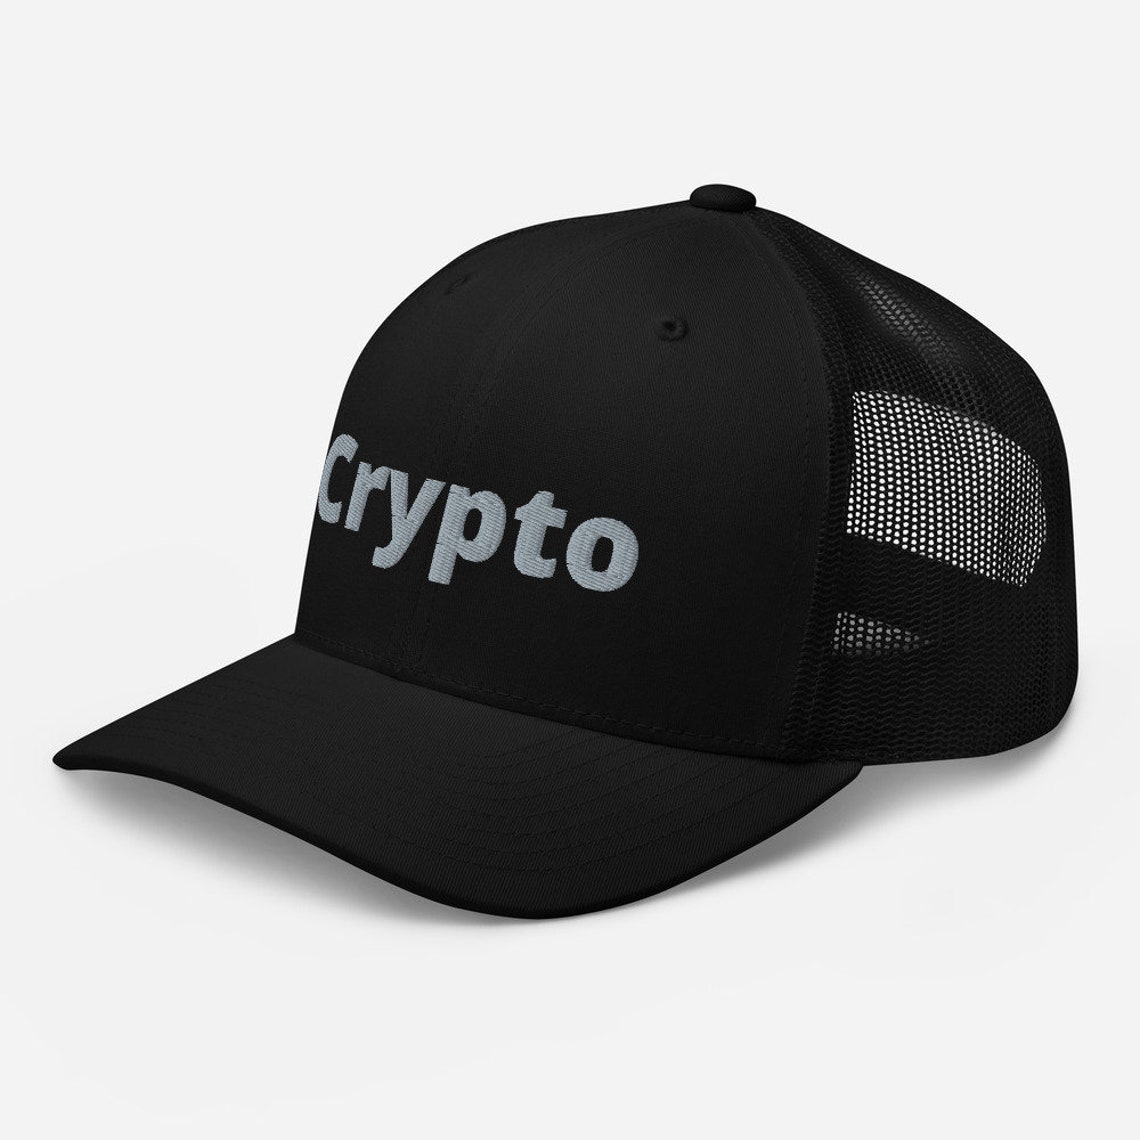 buy small cap crypto